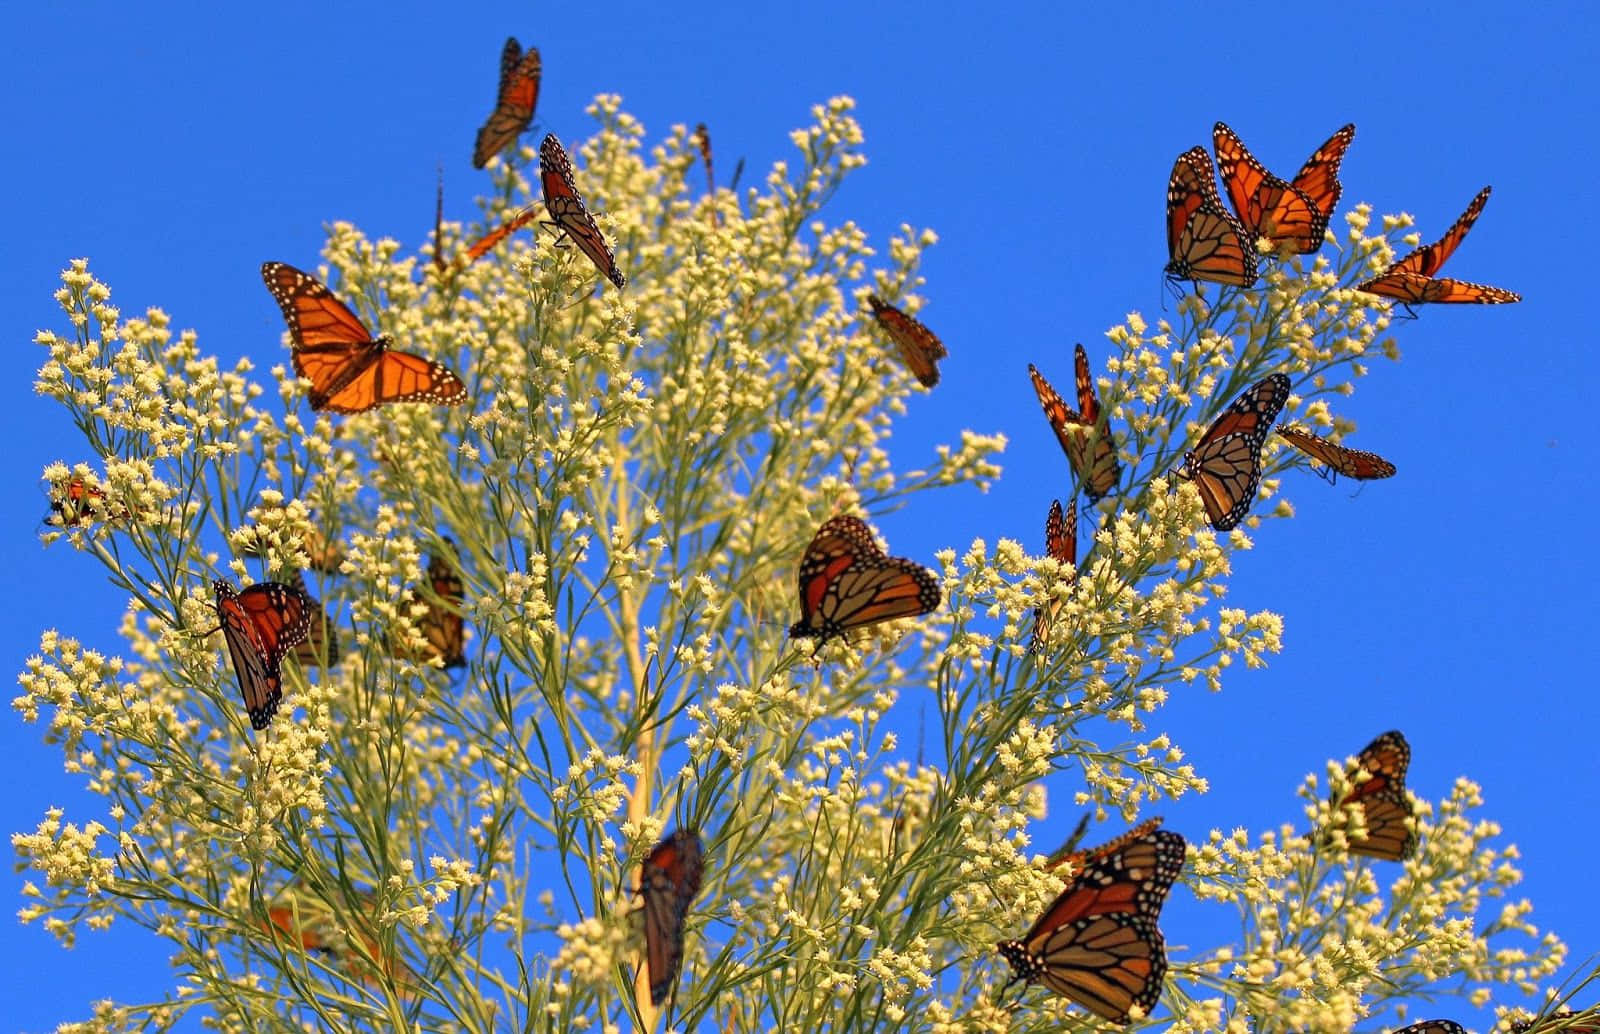 Unafarfalla Monarca È Una Creatura Bellissima E Colorata Che Volteggia Nel Nostro Mondo.